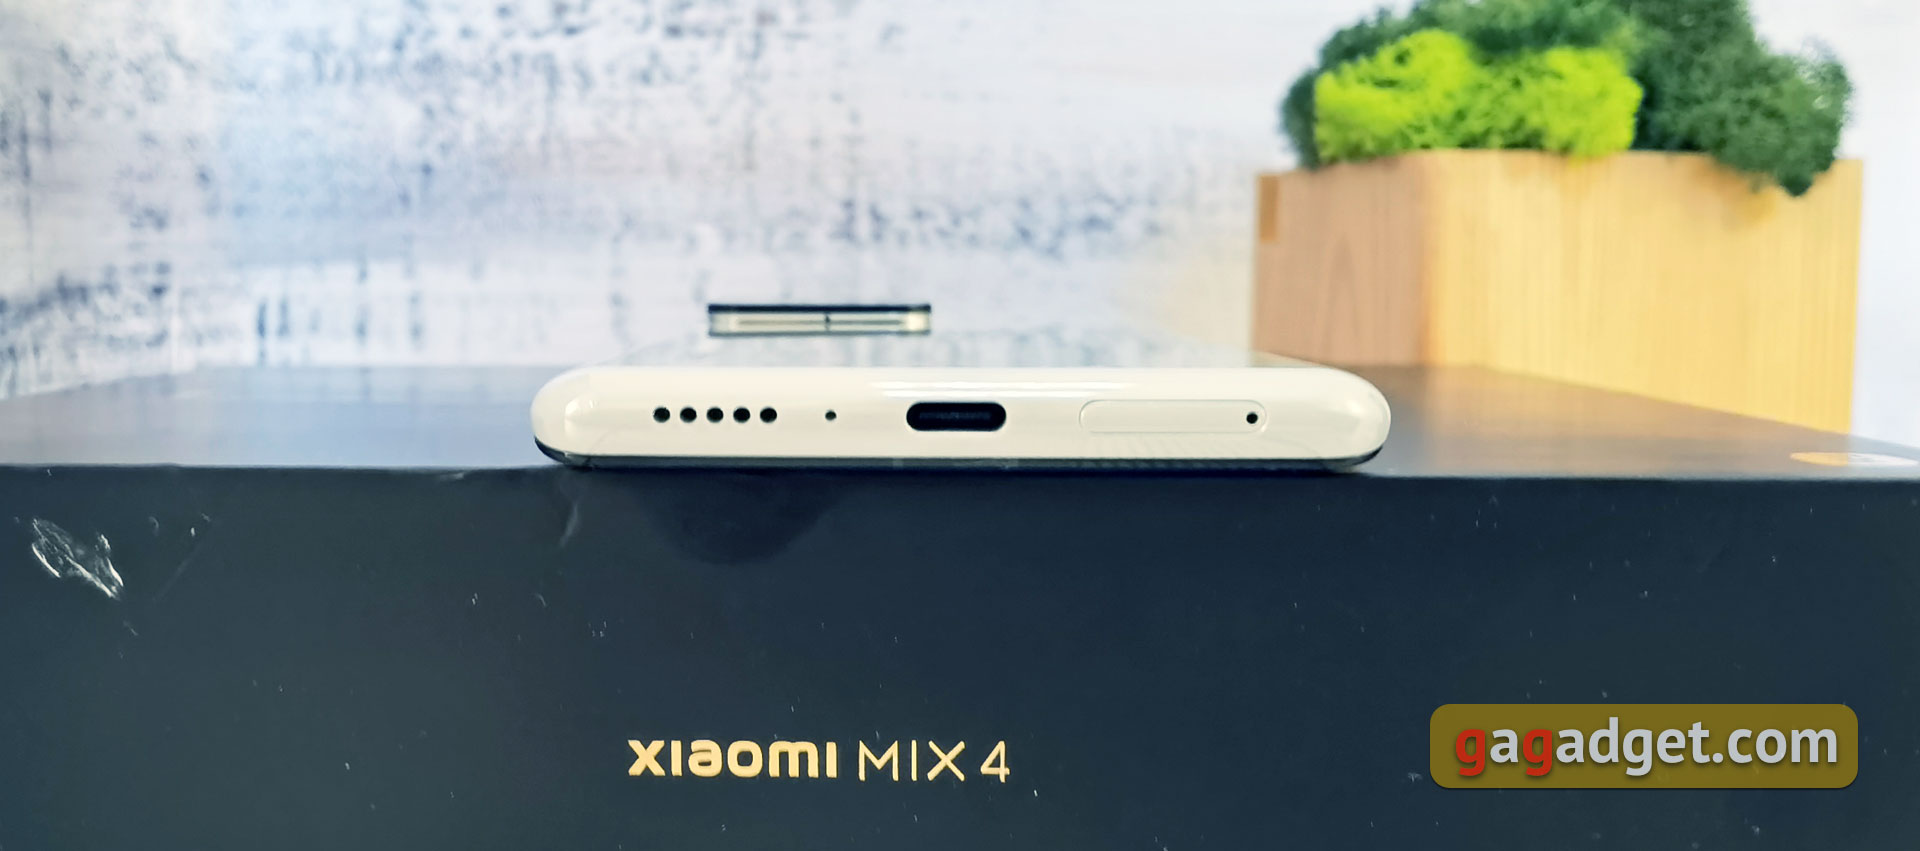 El Xiaomi MIX 4 con mis propios ojos: una cámara frontal debajo de la pantalla que realmente no se ve-16